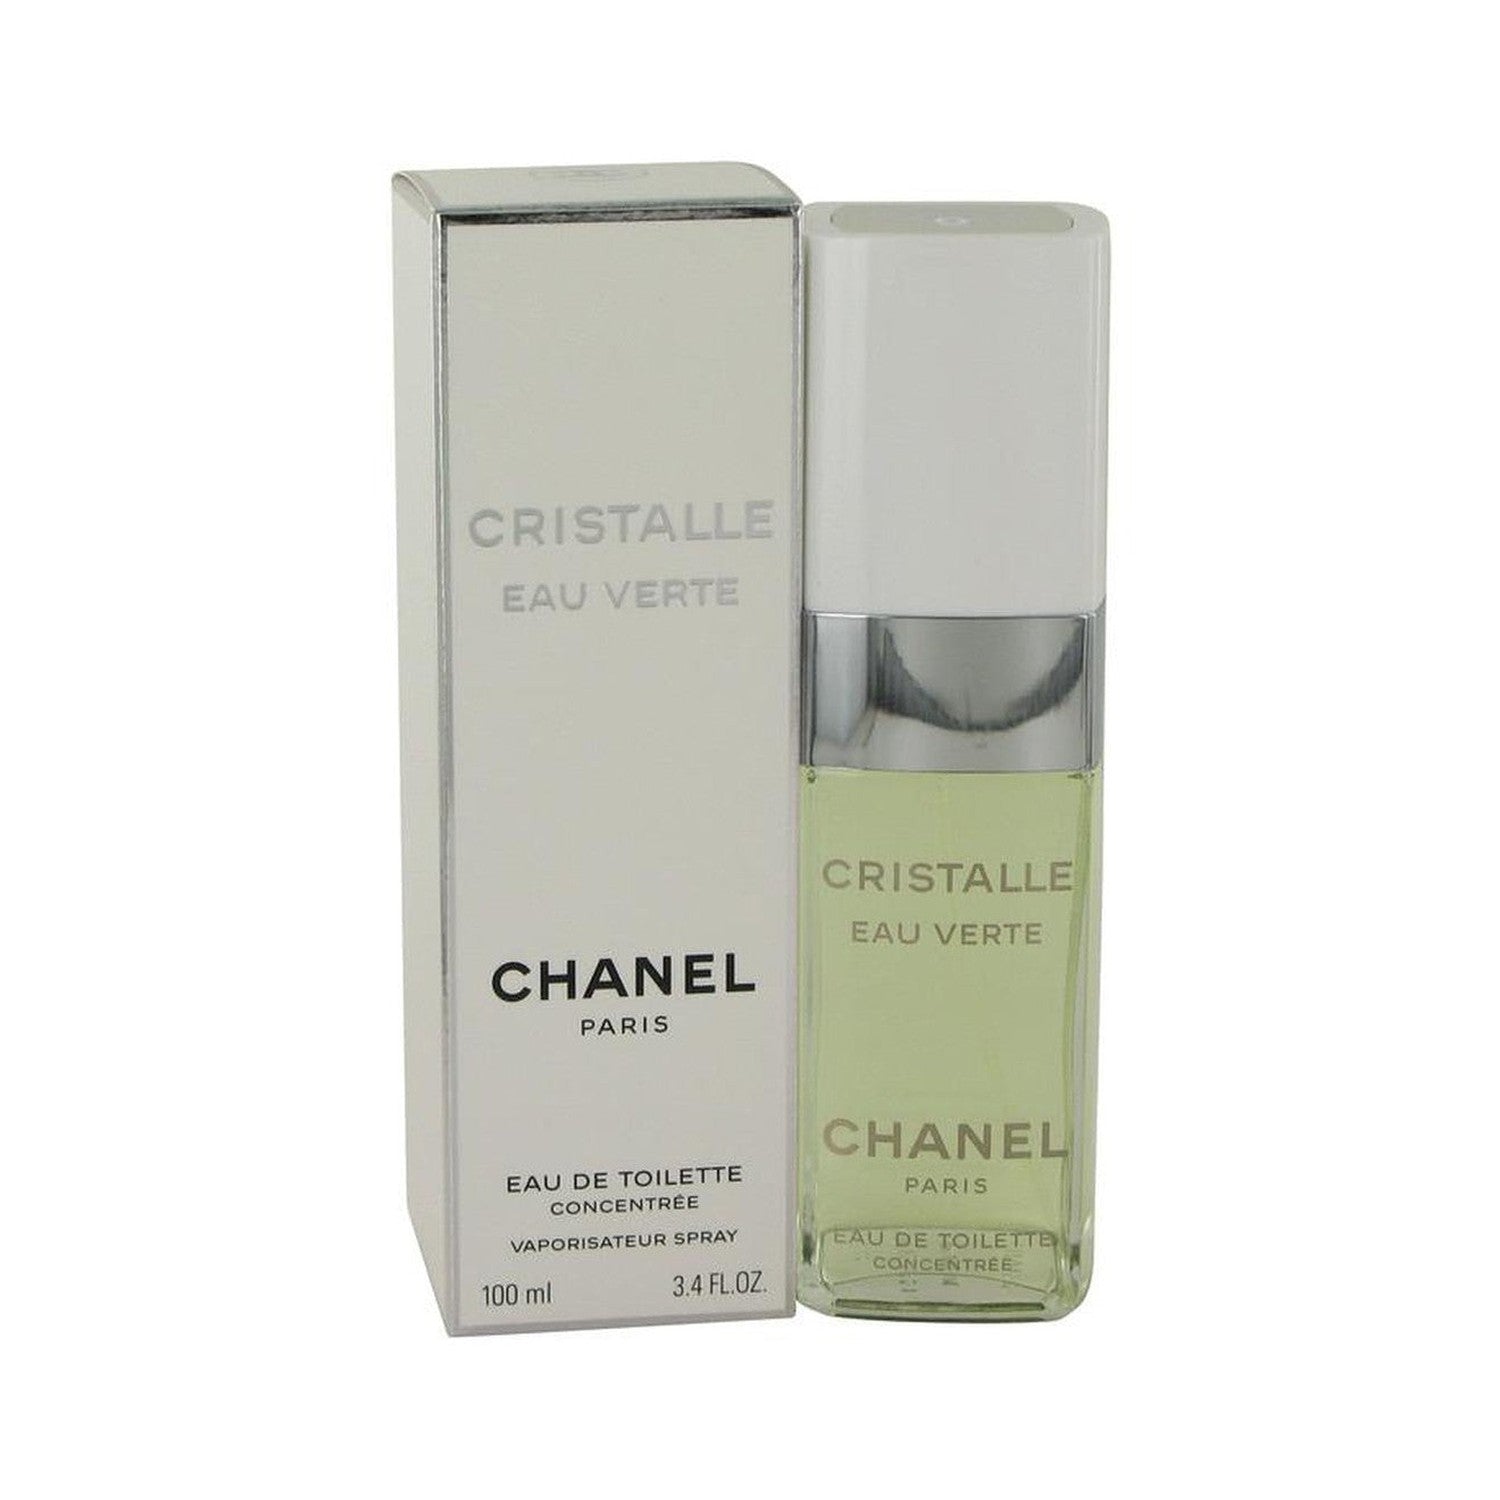 Cristalle Eau Verte by Chanel Eau De Toilette Concentree Spray 3.4